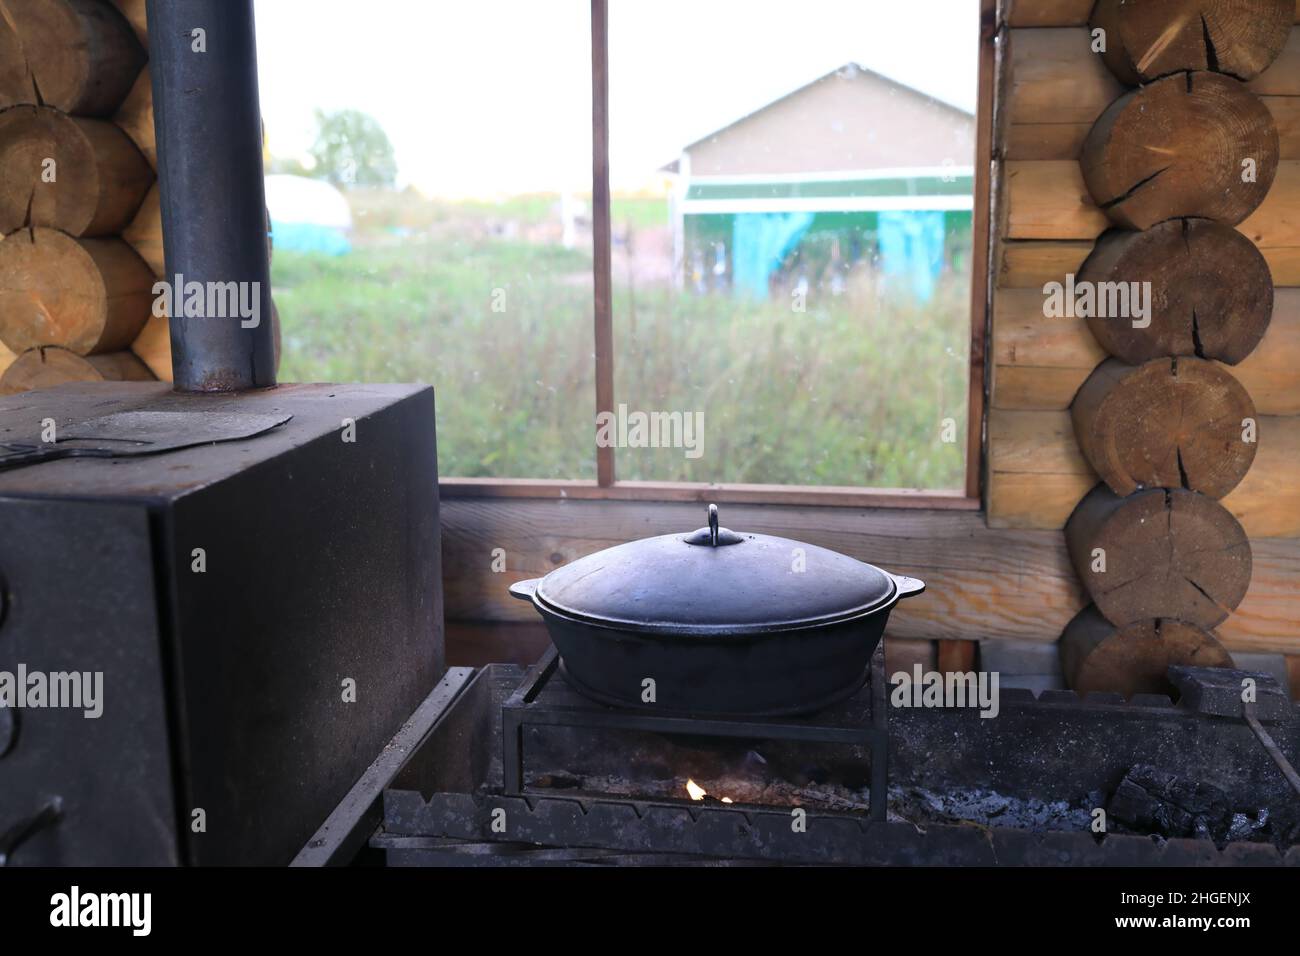 https://c8.alamy.com/comp/2HGENJX/cooking-soup-in-cauldron-on-fire-in-gazebo-2HGENJX.jpg